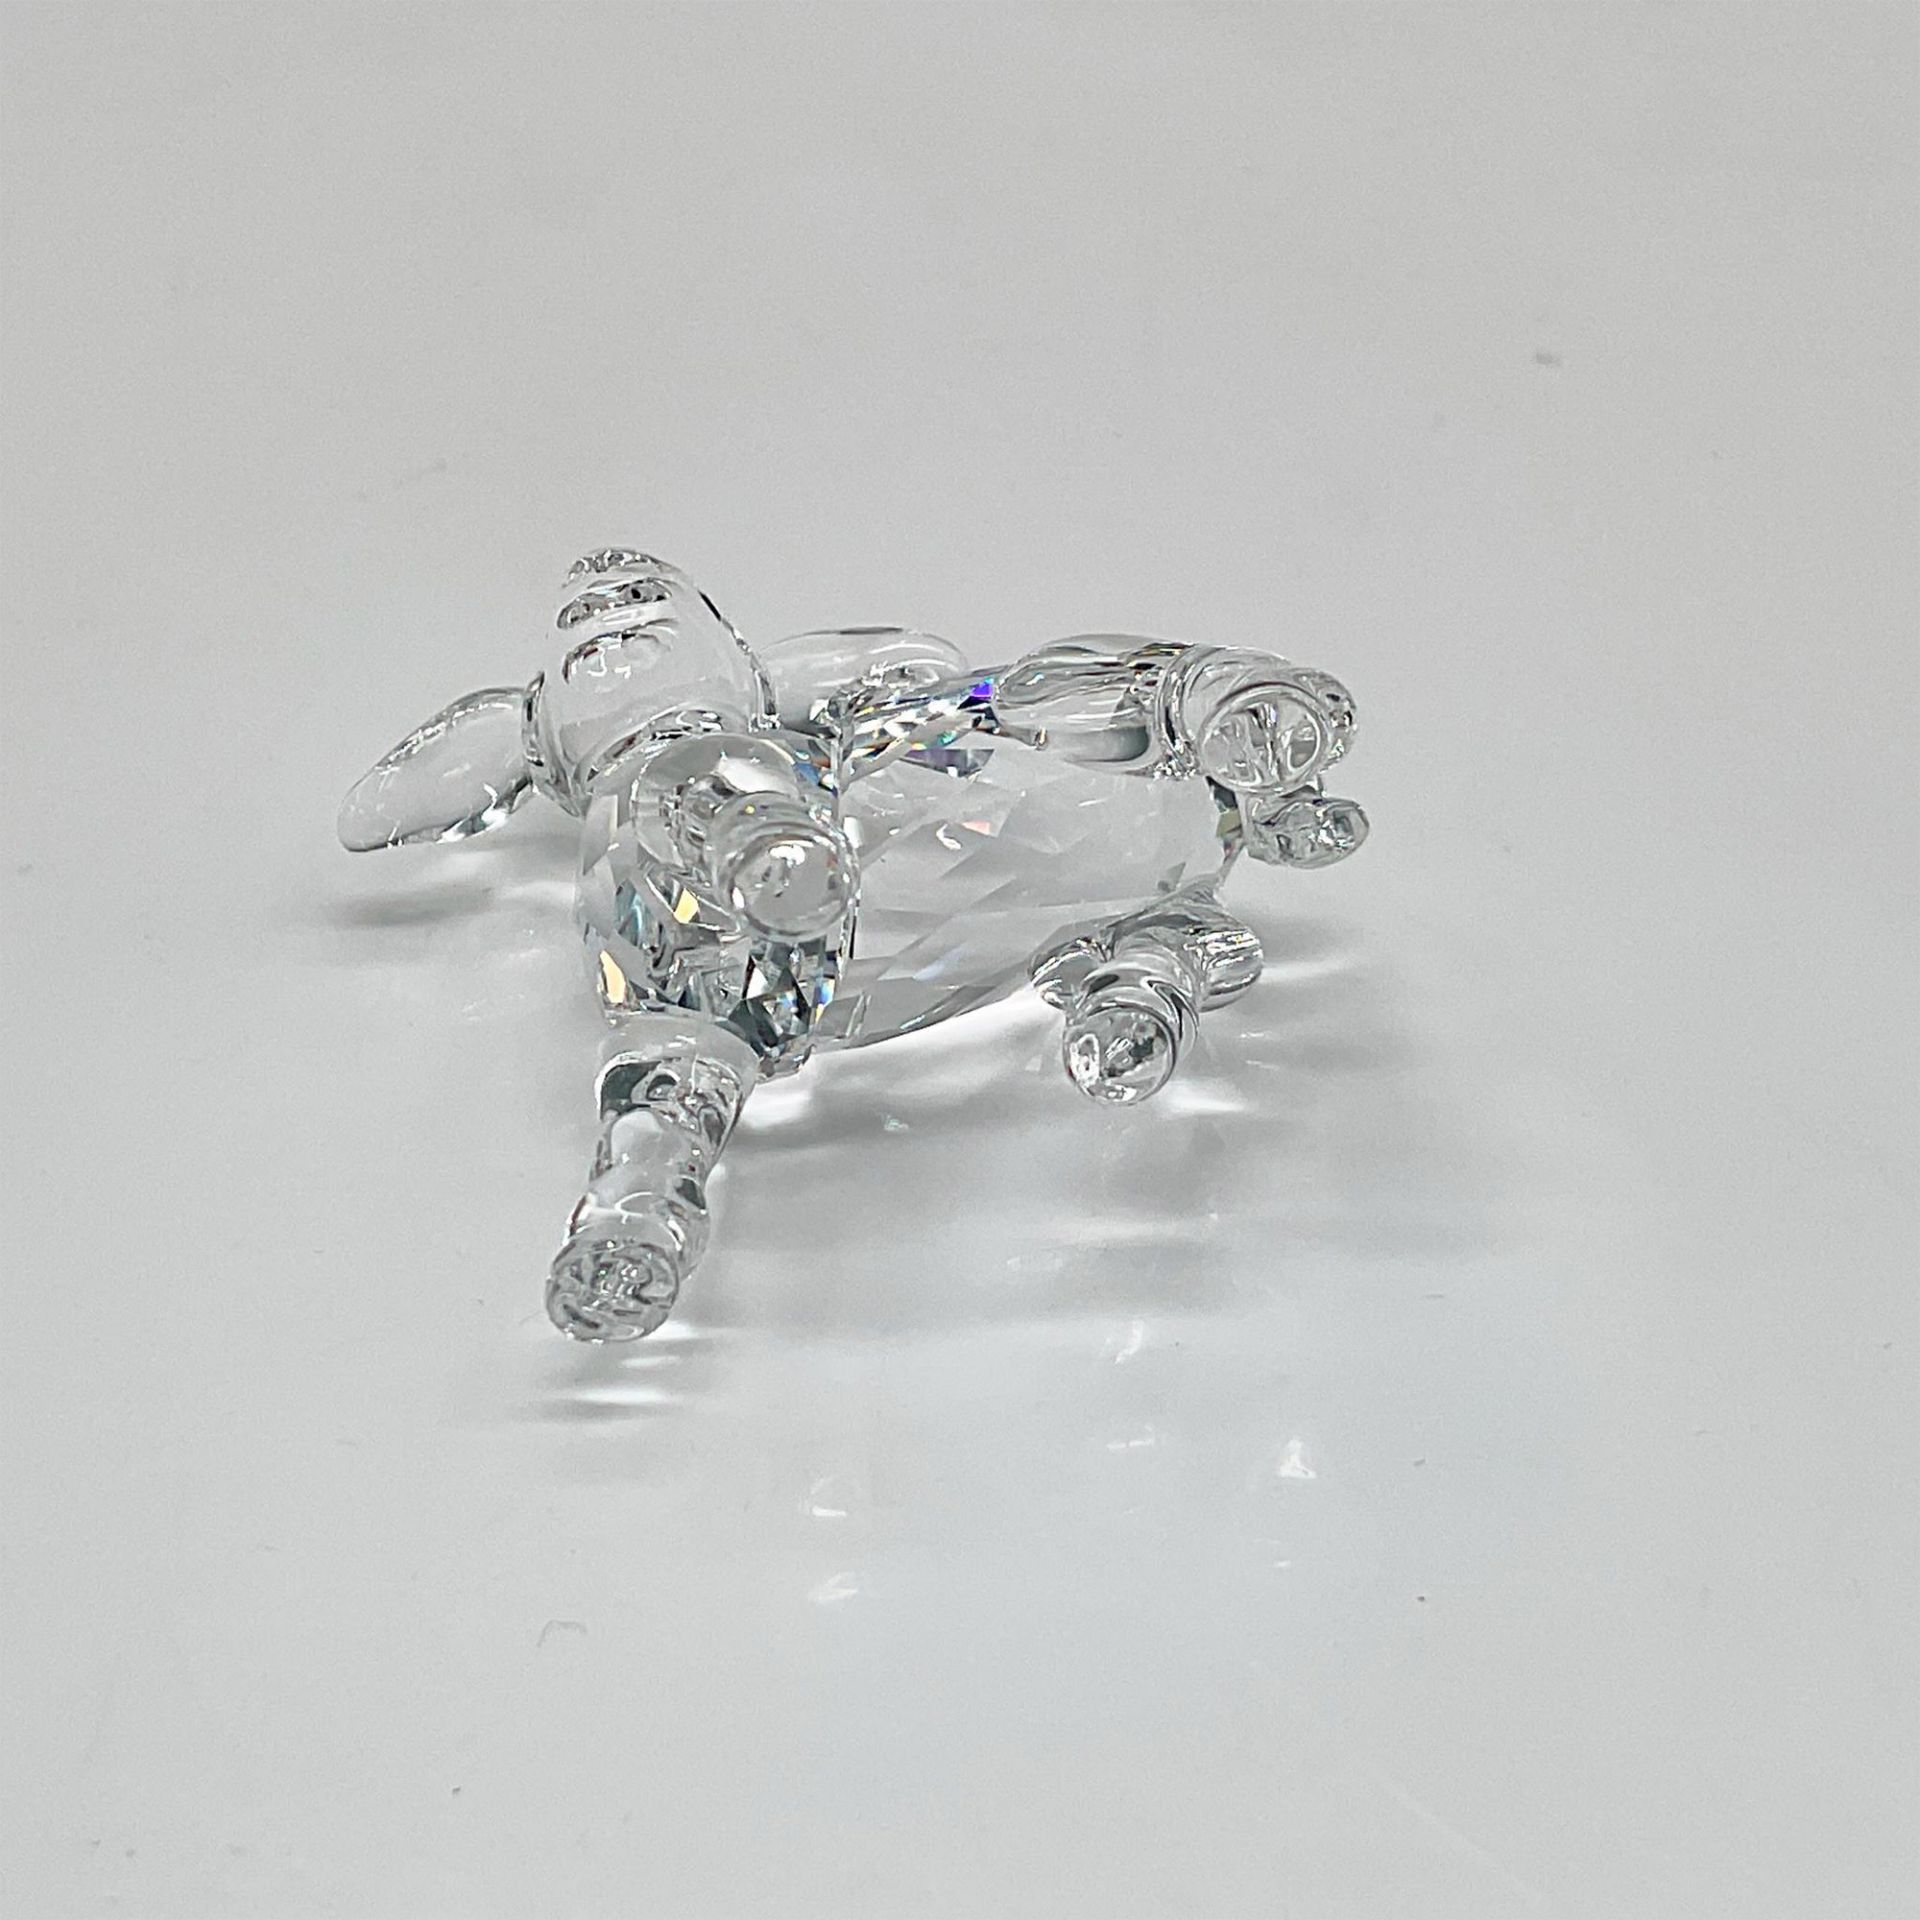 Swarovski Crystal Figurine, Little Lamb - Image 3 of 4